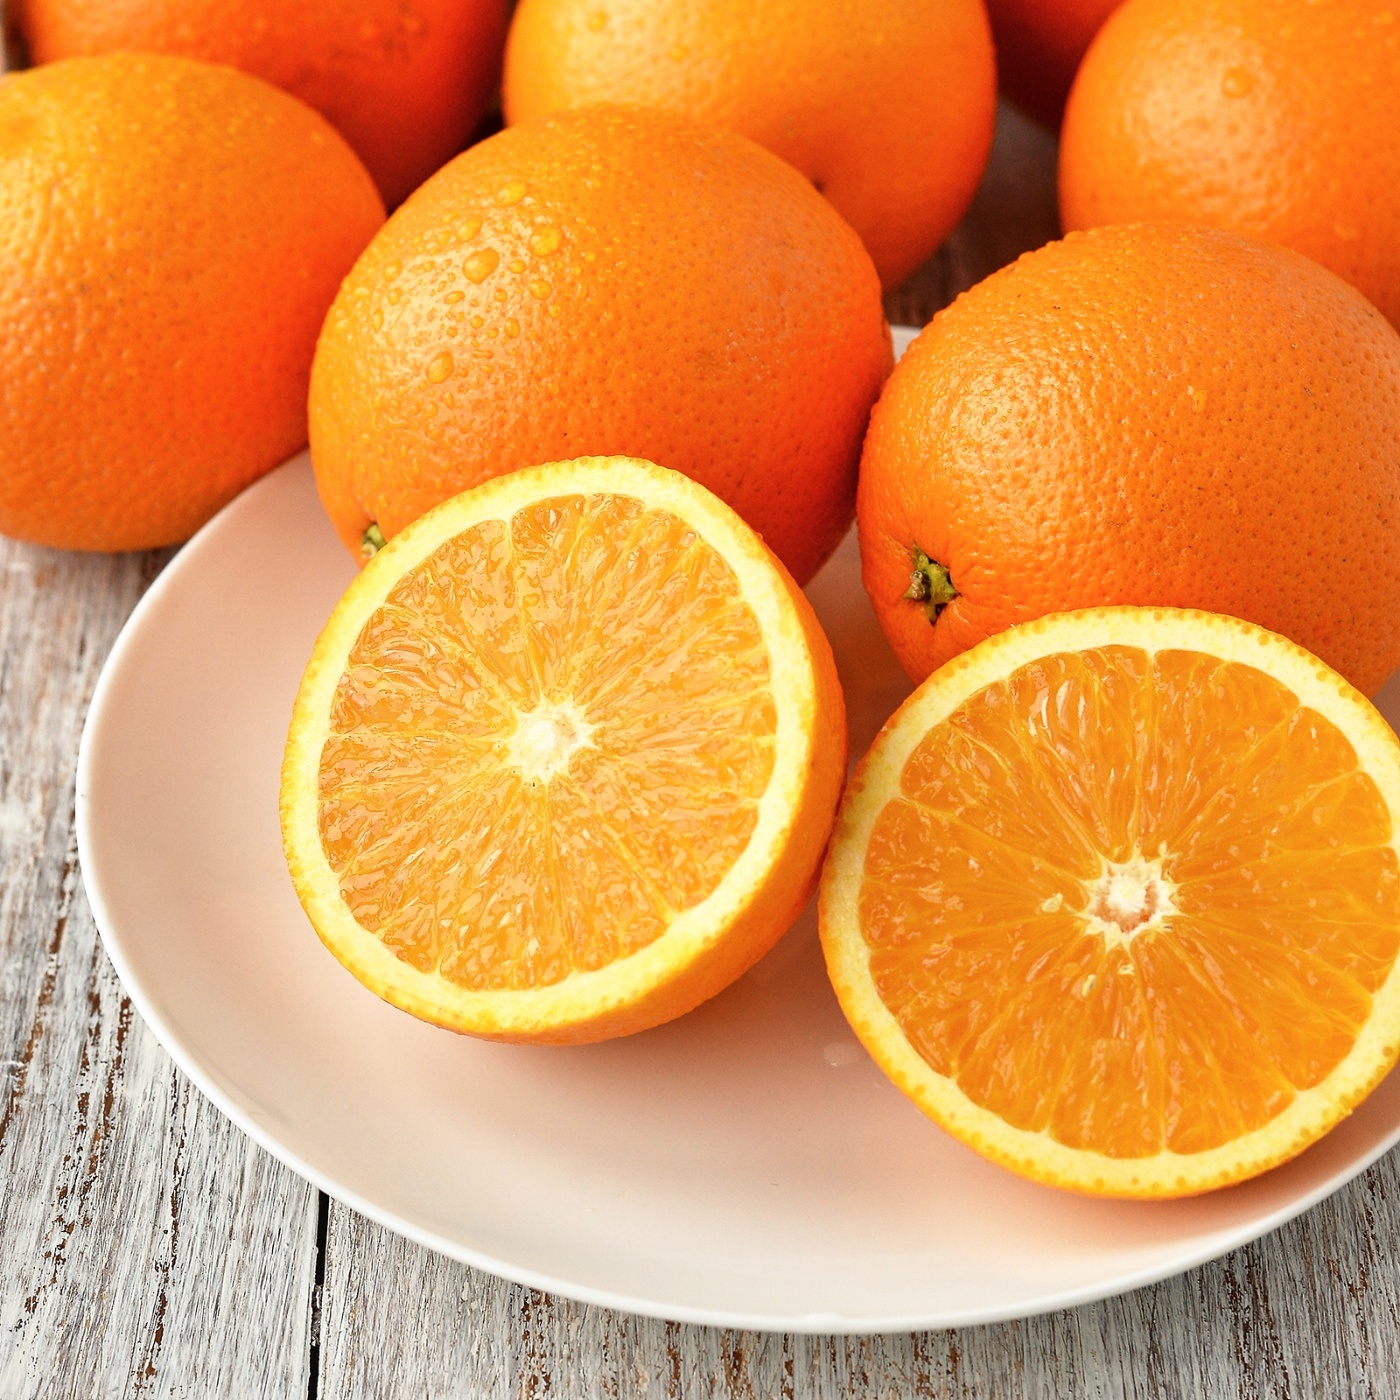 Апельсины для сока